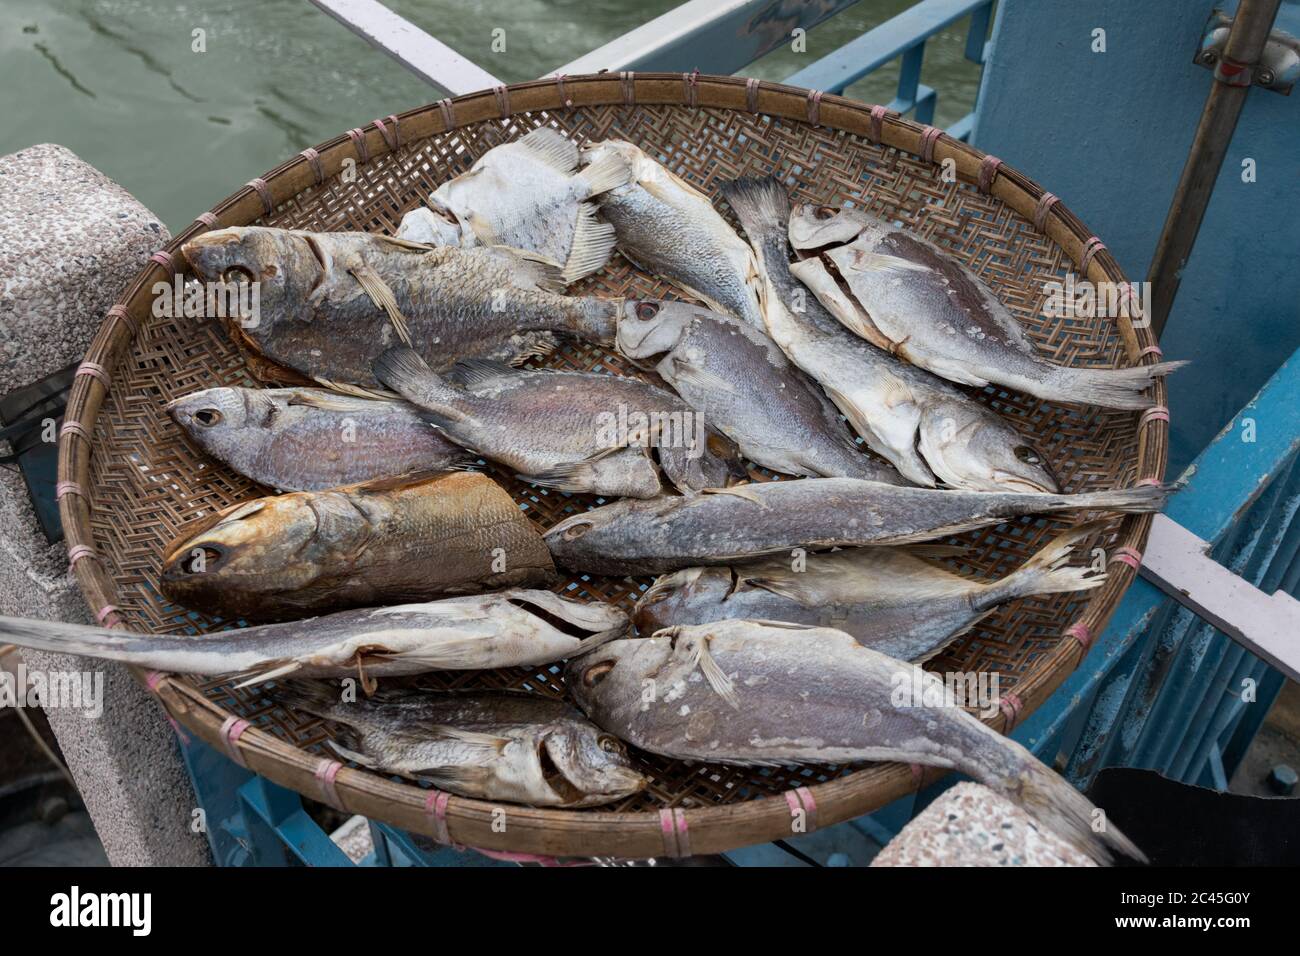 Fish catch in Tai O fishing village, Hong Kong Stock Photo